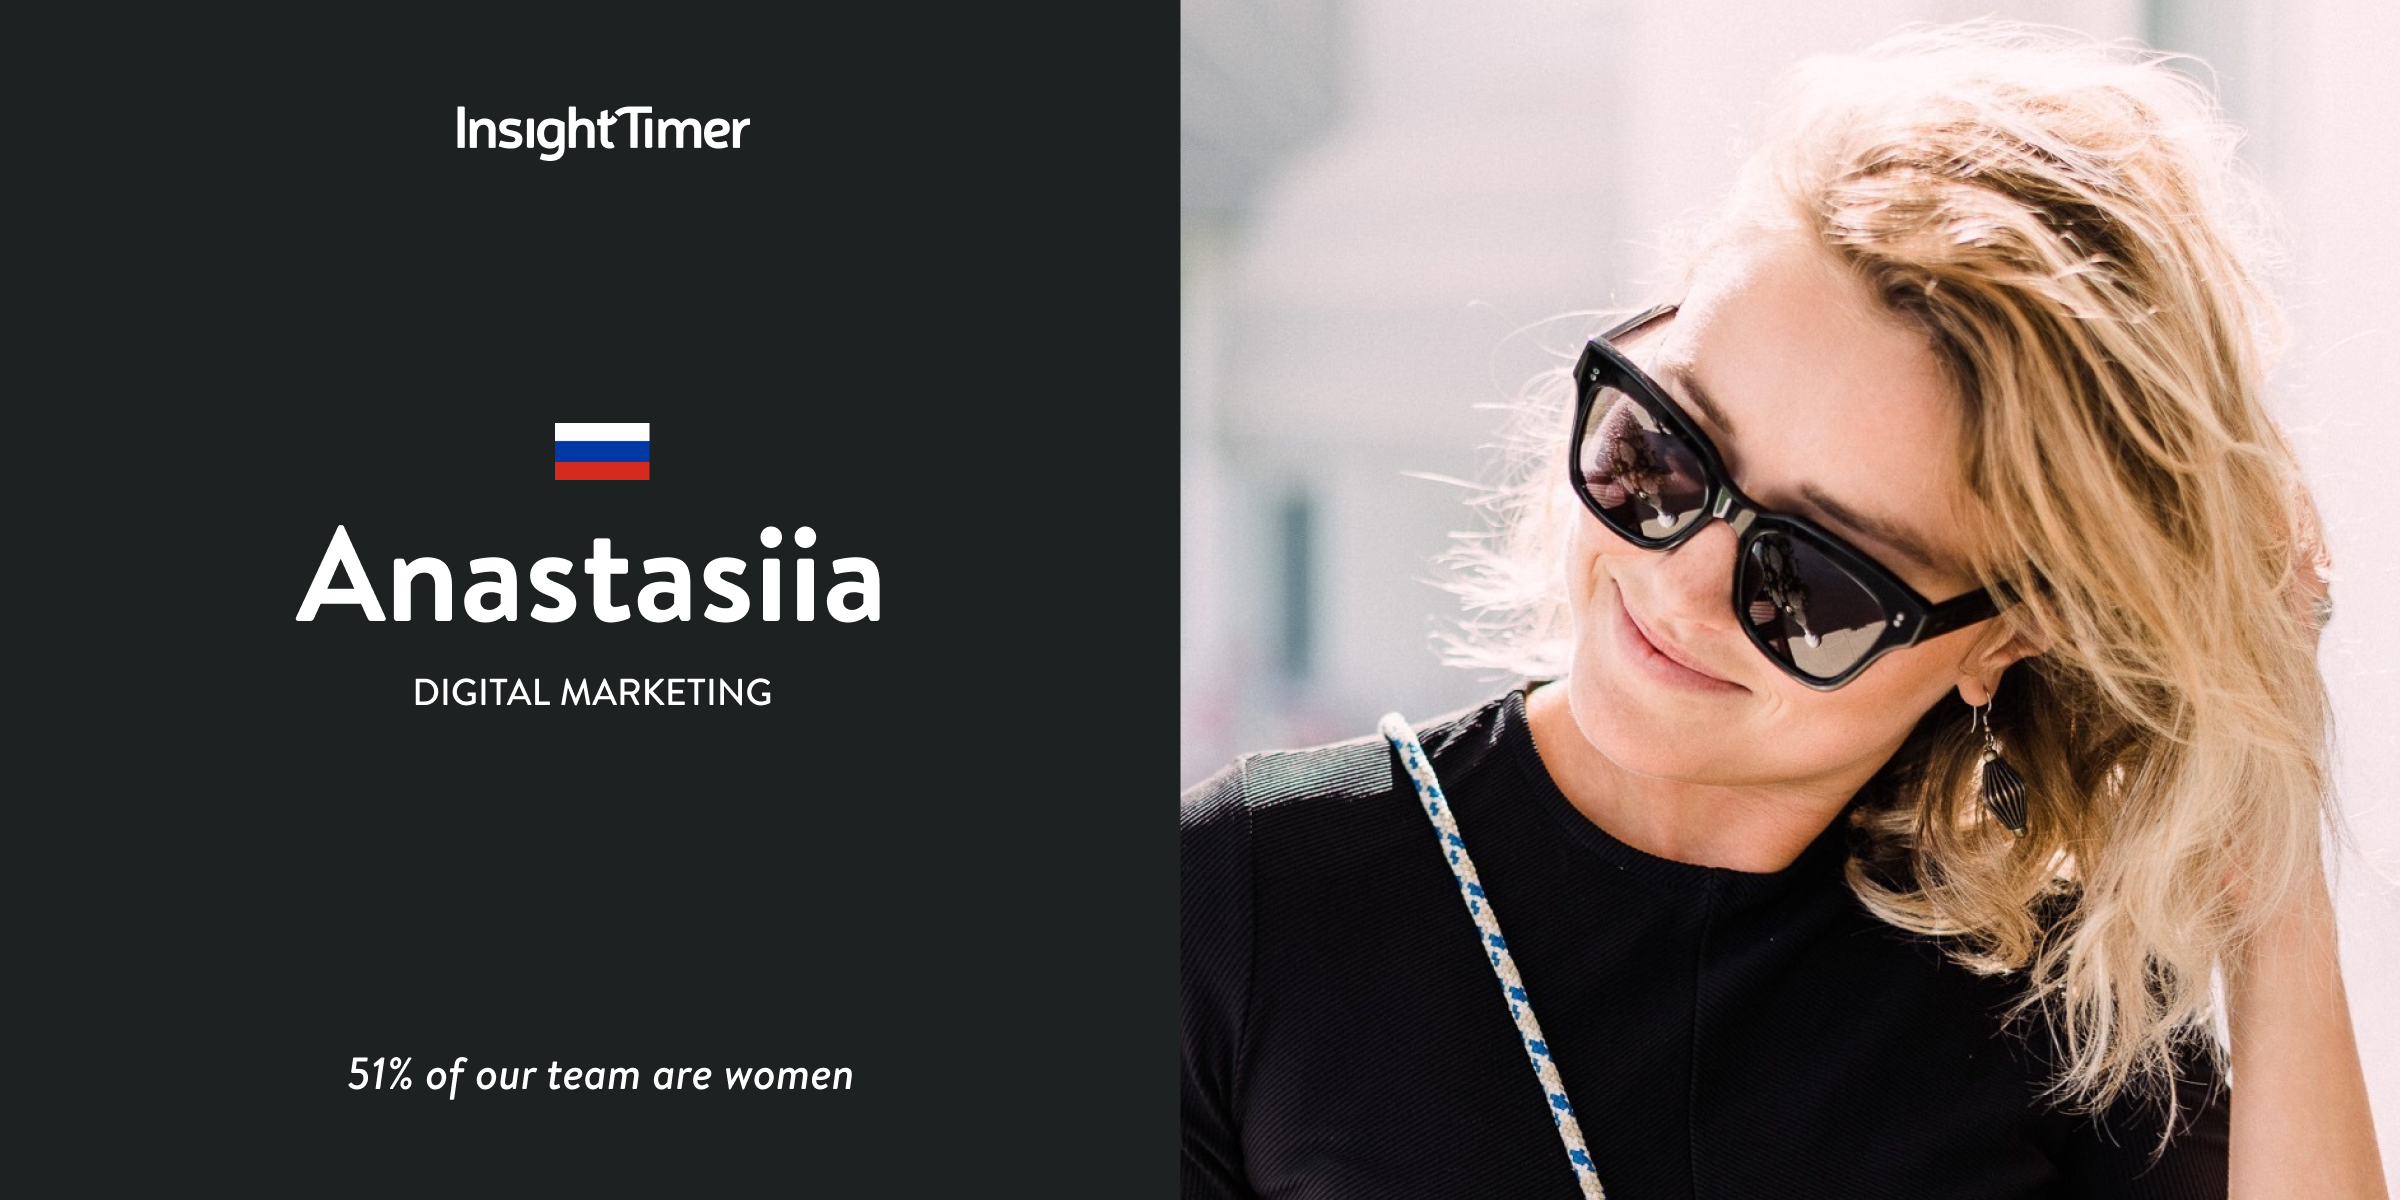 Meet Anastasiia – Digital Marketing